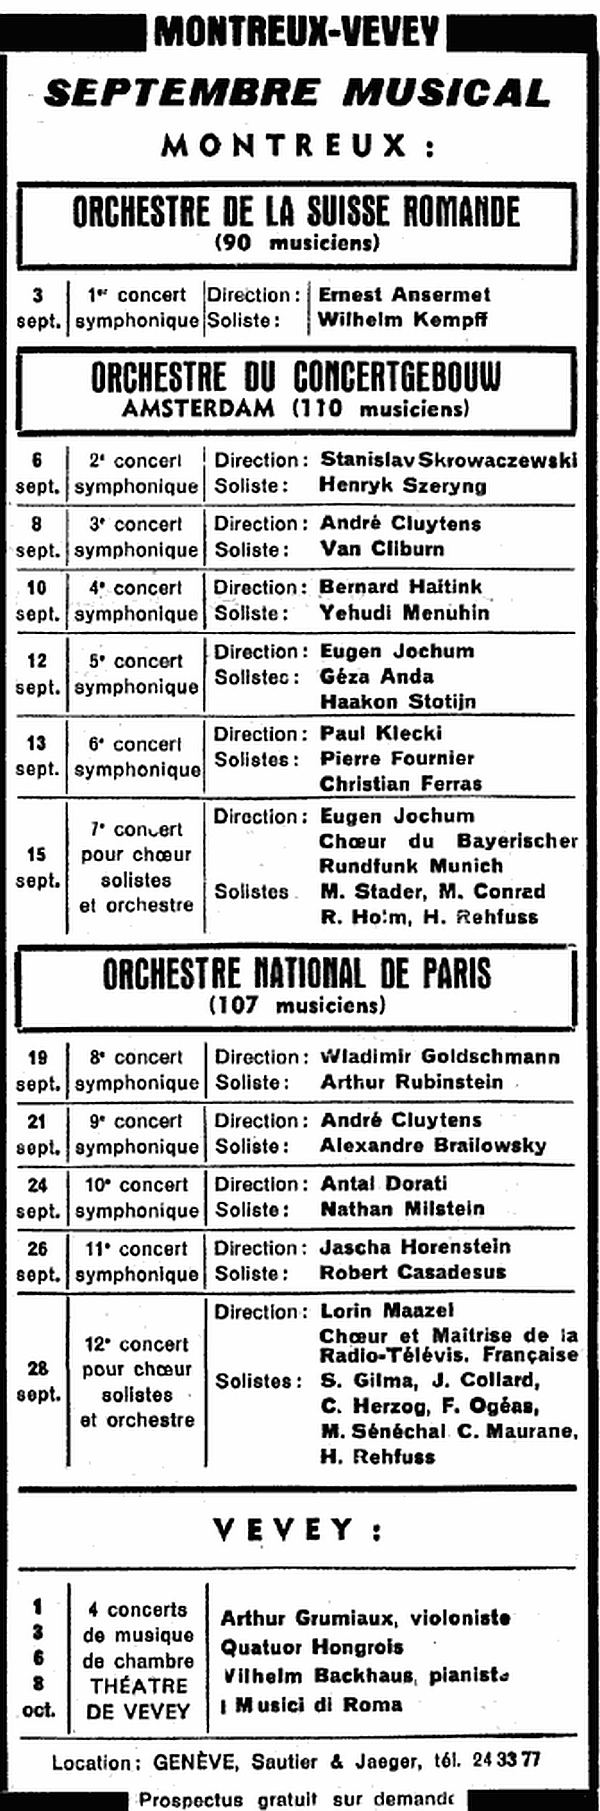 annonce publicitaire, Festival de Montreux, Septembre musical 1961, parue dans la Gazette de Lausanne du 19/20 août 1961 en page 14, cliquer pour une vue agrandie